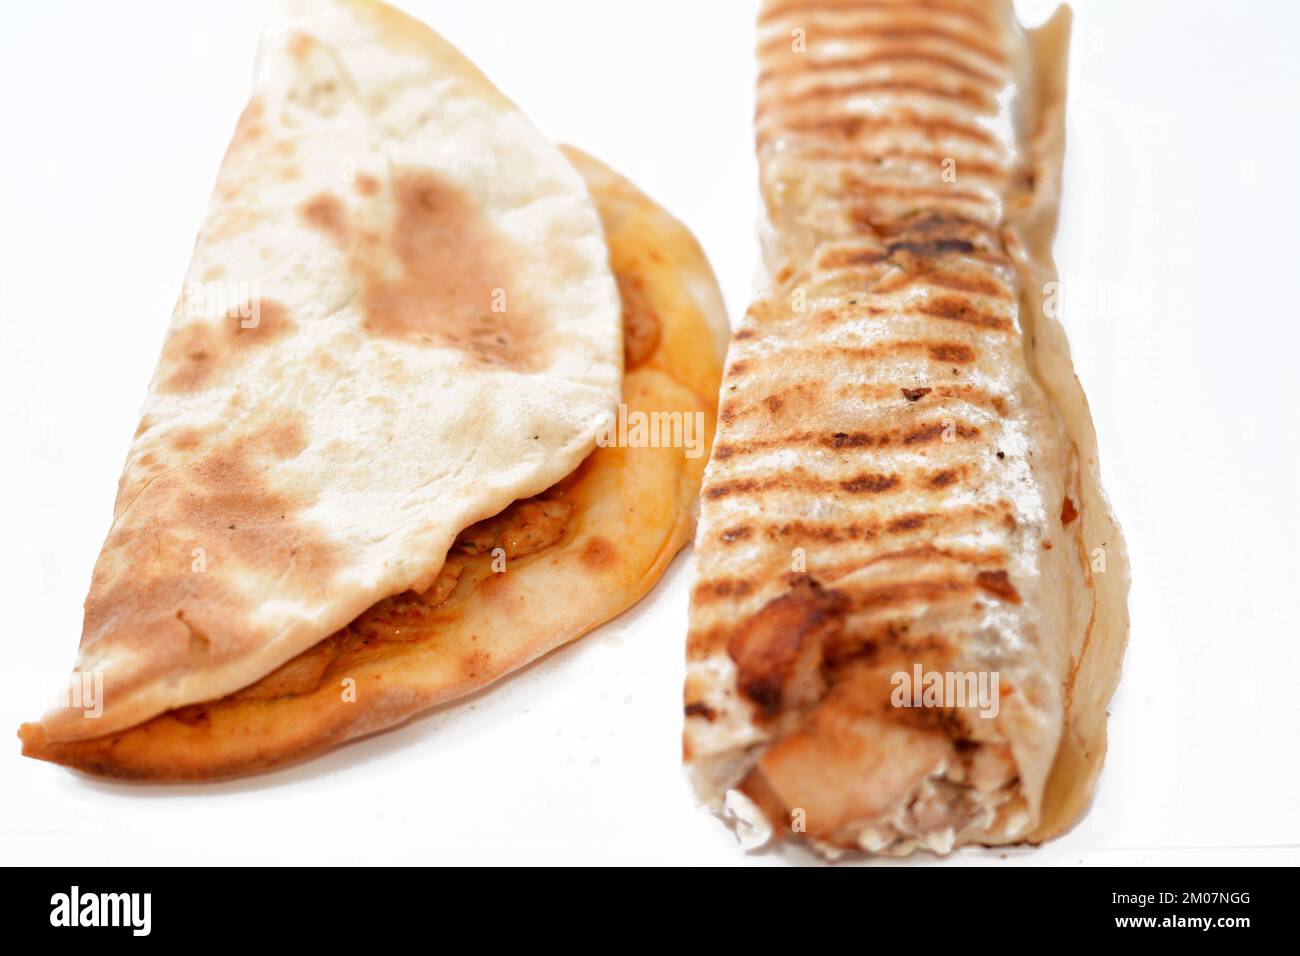 Syrische Küche mit Hühnershawerma oder Shawarma-Tortilla, eingewickelt in syrisches Brot und gebackener Snack namens Manakish, ein ähnliches Brot aus dem Nahen Osten wie Pizz Stockfoto